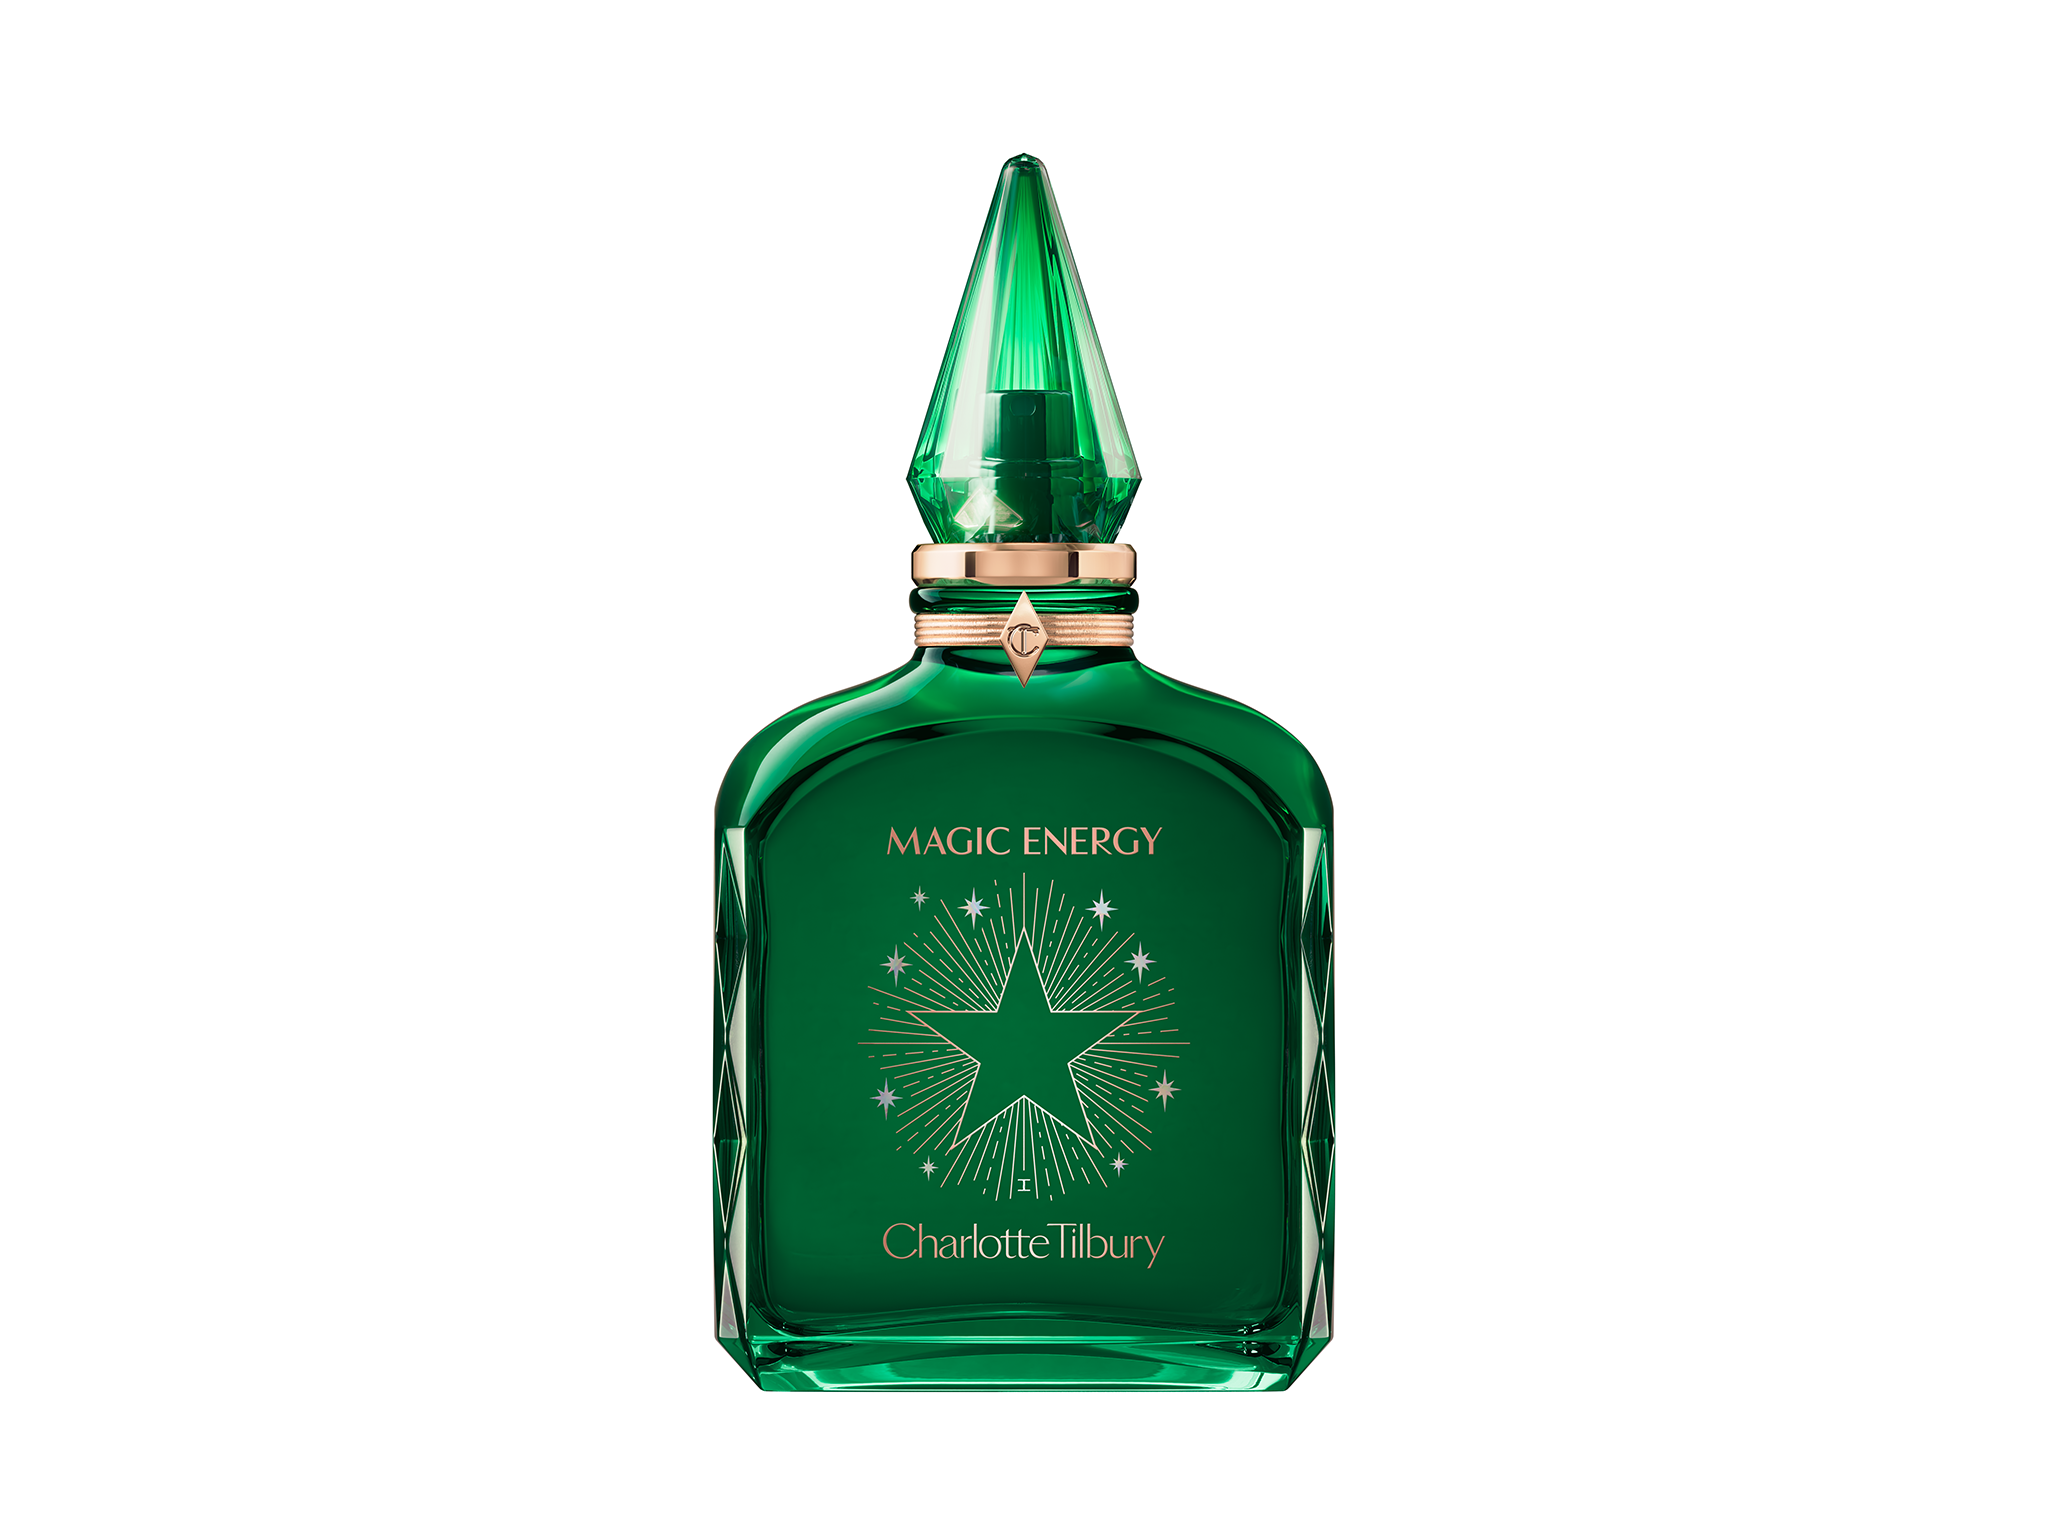 Charlotte Tilbury magic energy eau de parfum review indybest